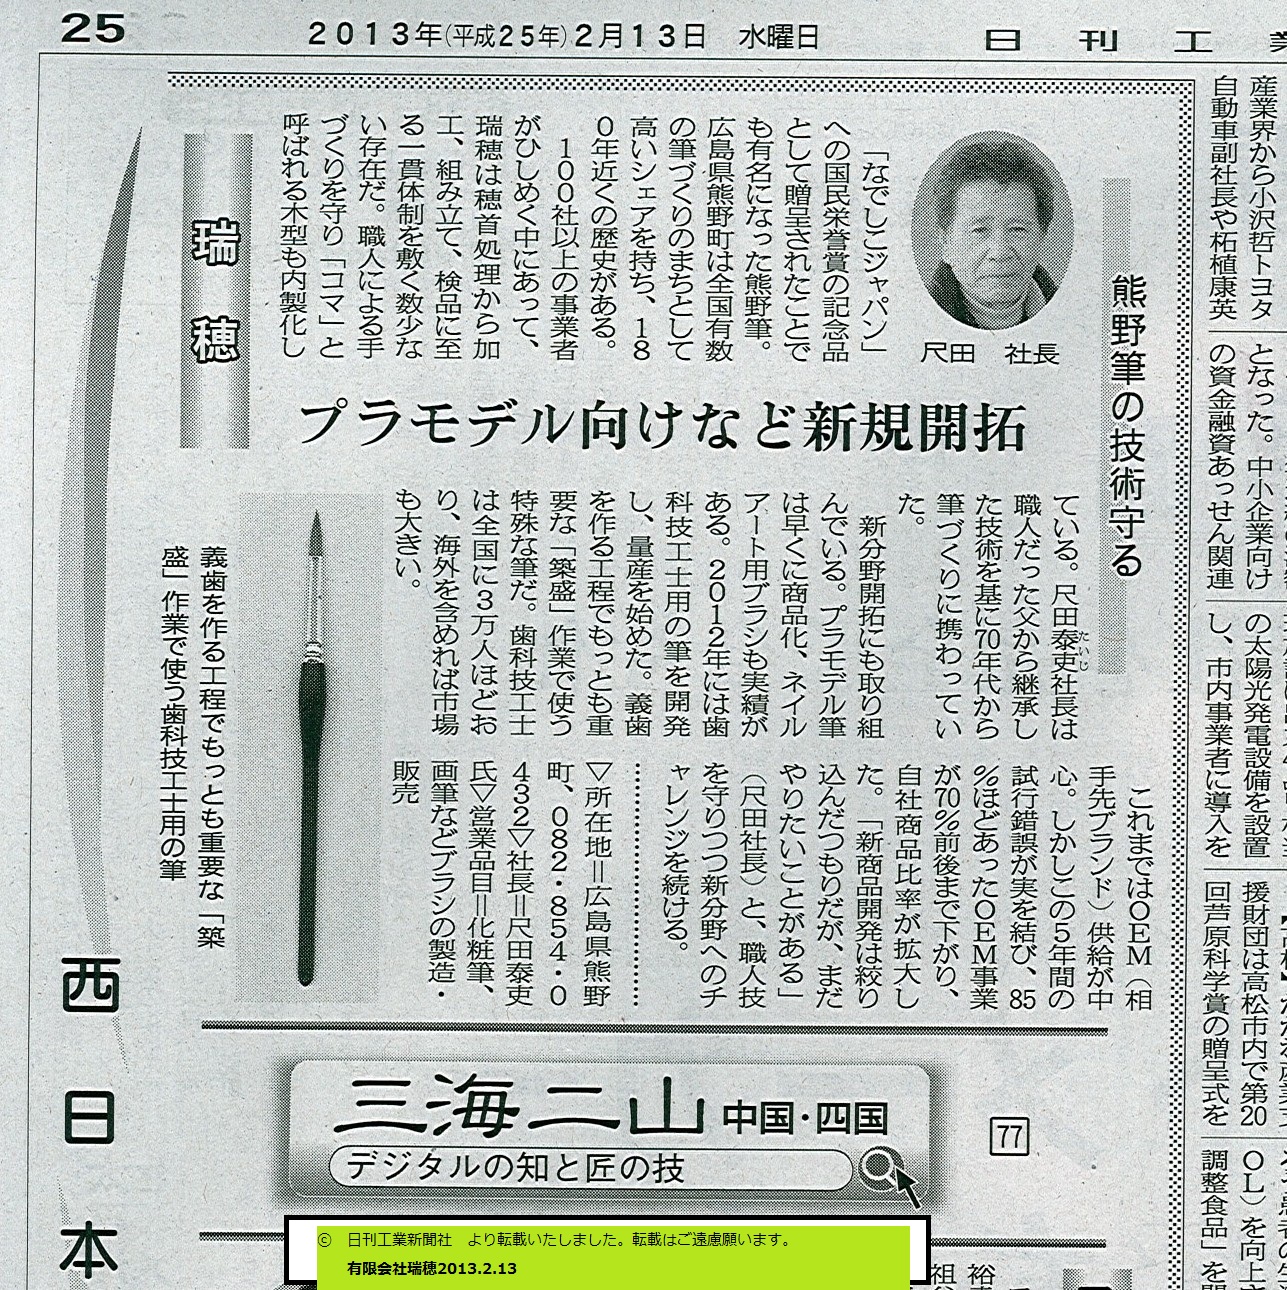 http://www.mizuho-brush.com/corporate/news/20130213%E5%9C%B0%E5%9F%9F%E8%B3%87%E6%BA%90.jpg